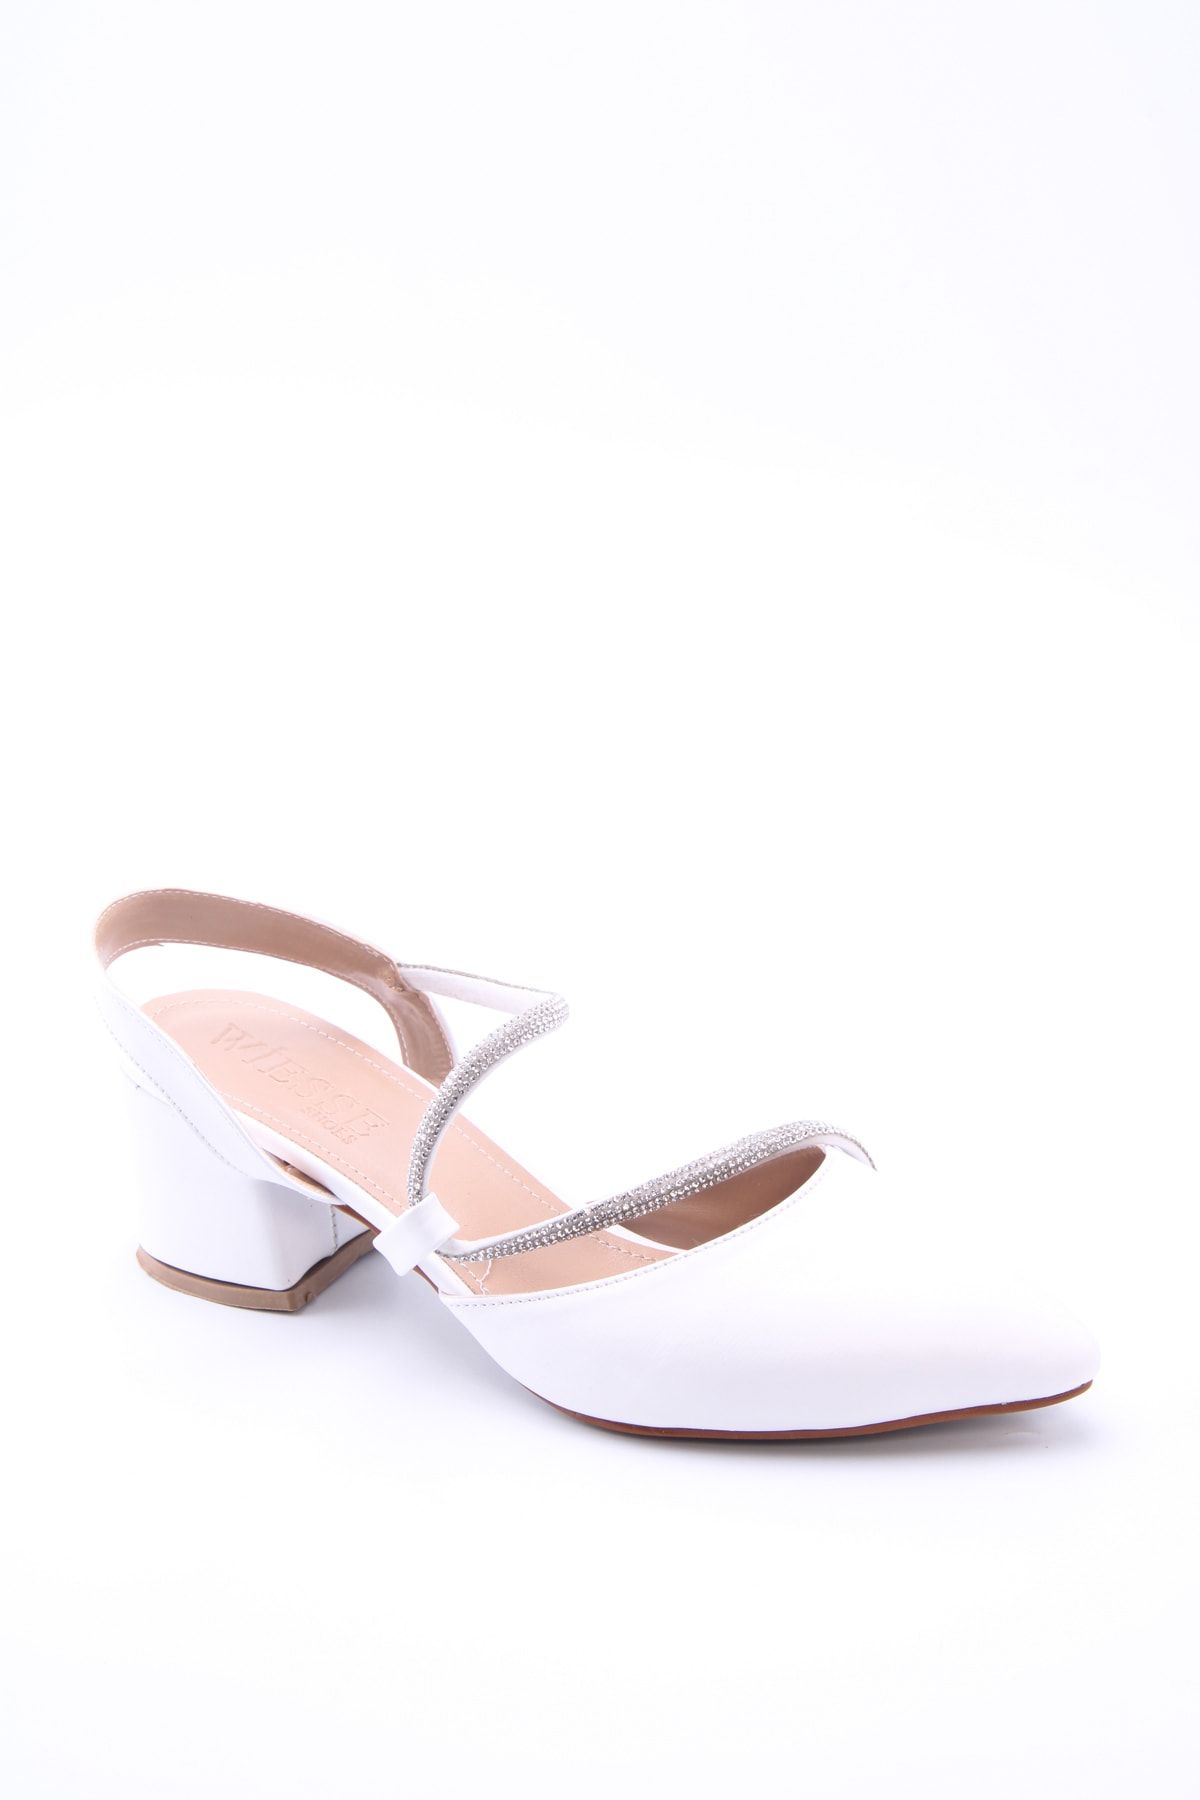 eformoda by emre yılmaz Beyaz Kadın Klasik Topuklu Ayakkabı 7052